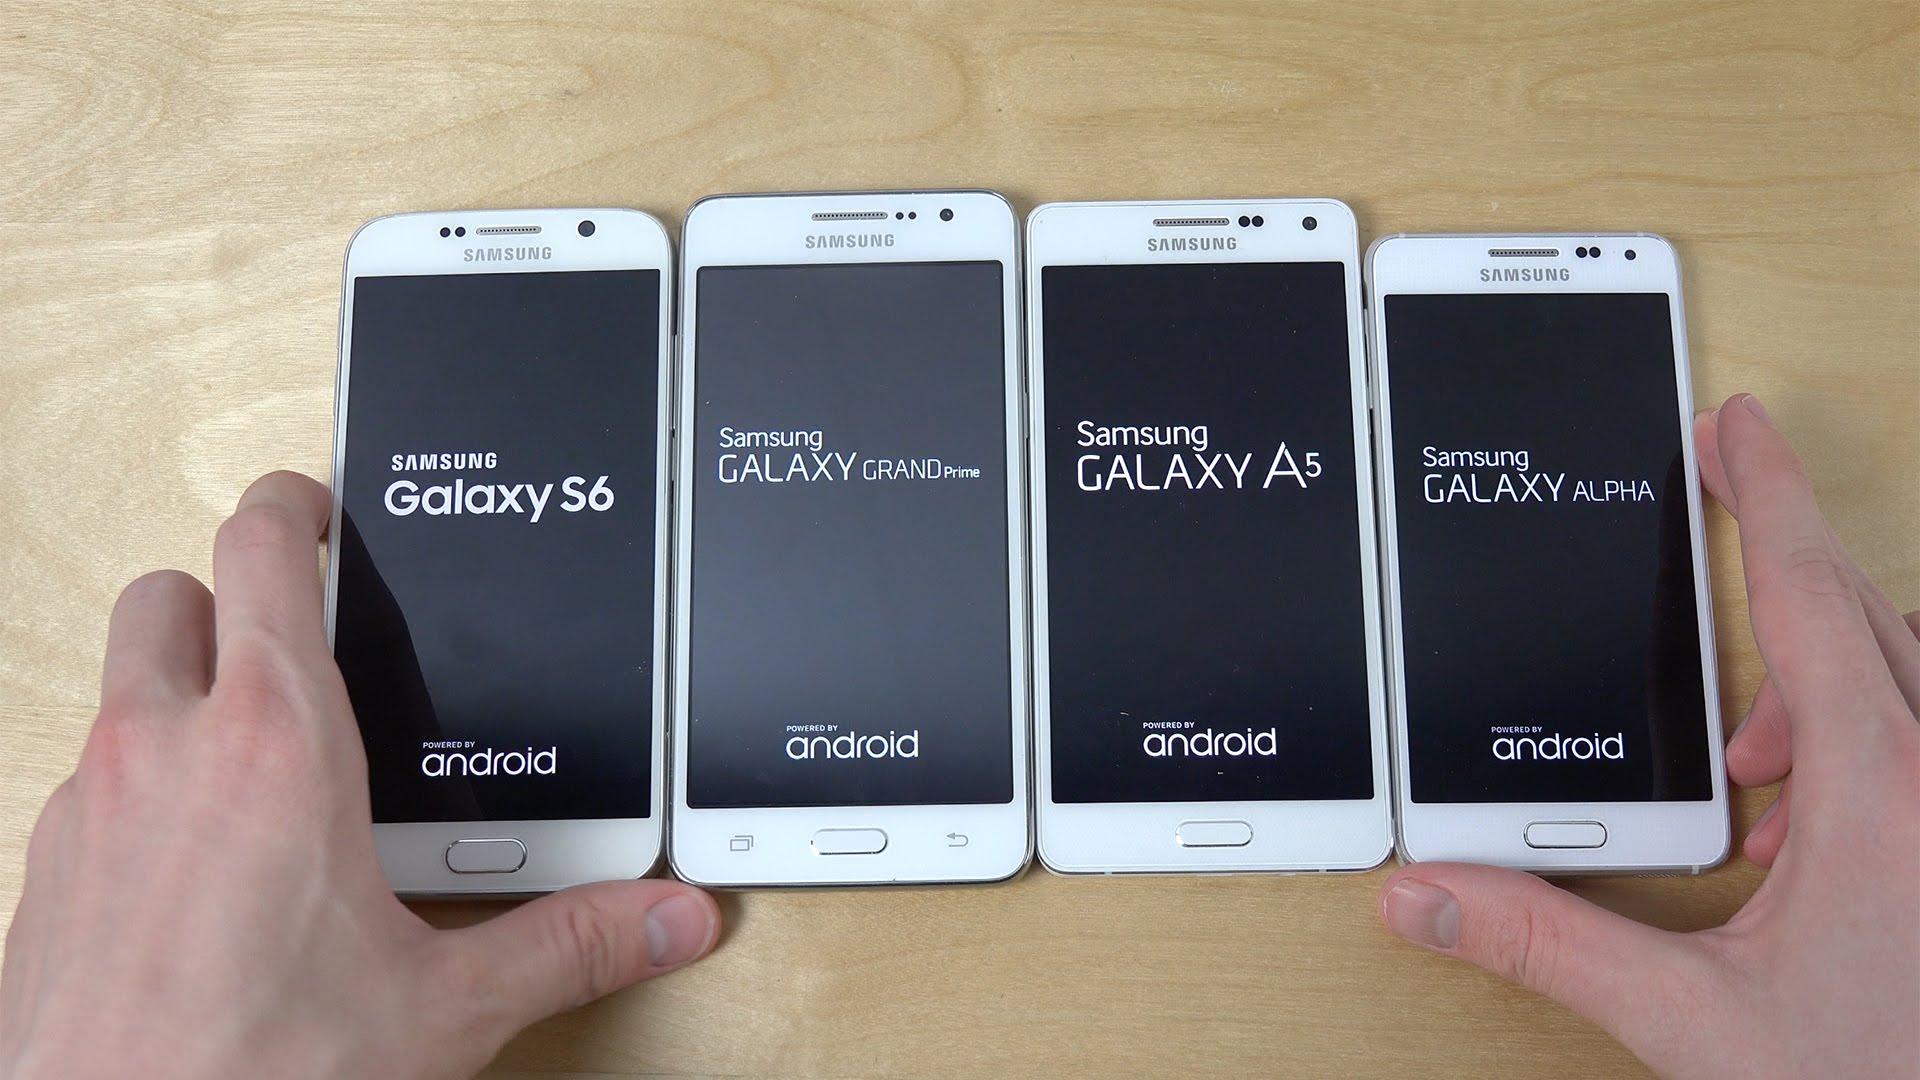 Самсунг а24 сравнить. Samsung Galaxy a5 6. Samsung Galaxy a3 6. Galaxy Alpha s6 qancha. Размер телефона самсунг а5.